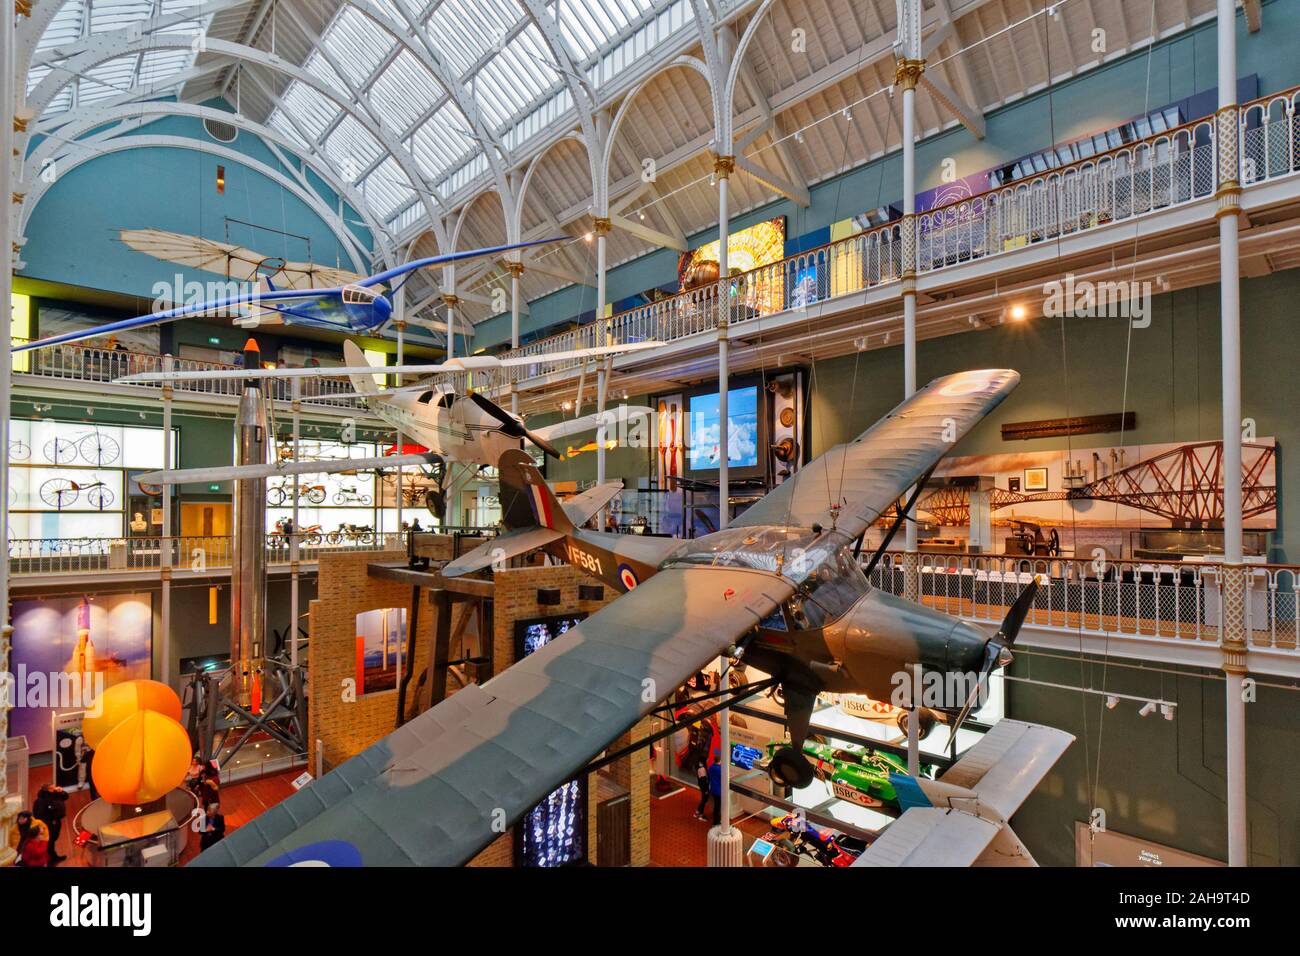 Edimburgo IL MUSEO NAZIONALE DI SCOZIA CHAMBERS STREET interno con aerei sospesi dal soffitto Foto Stock